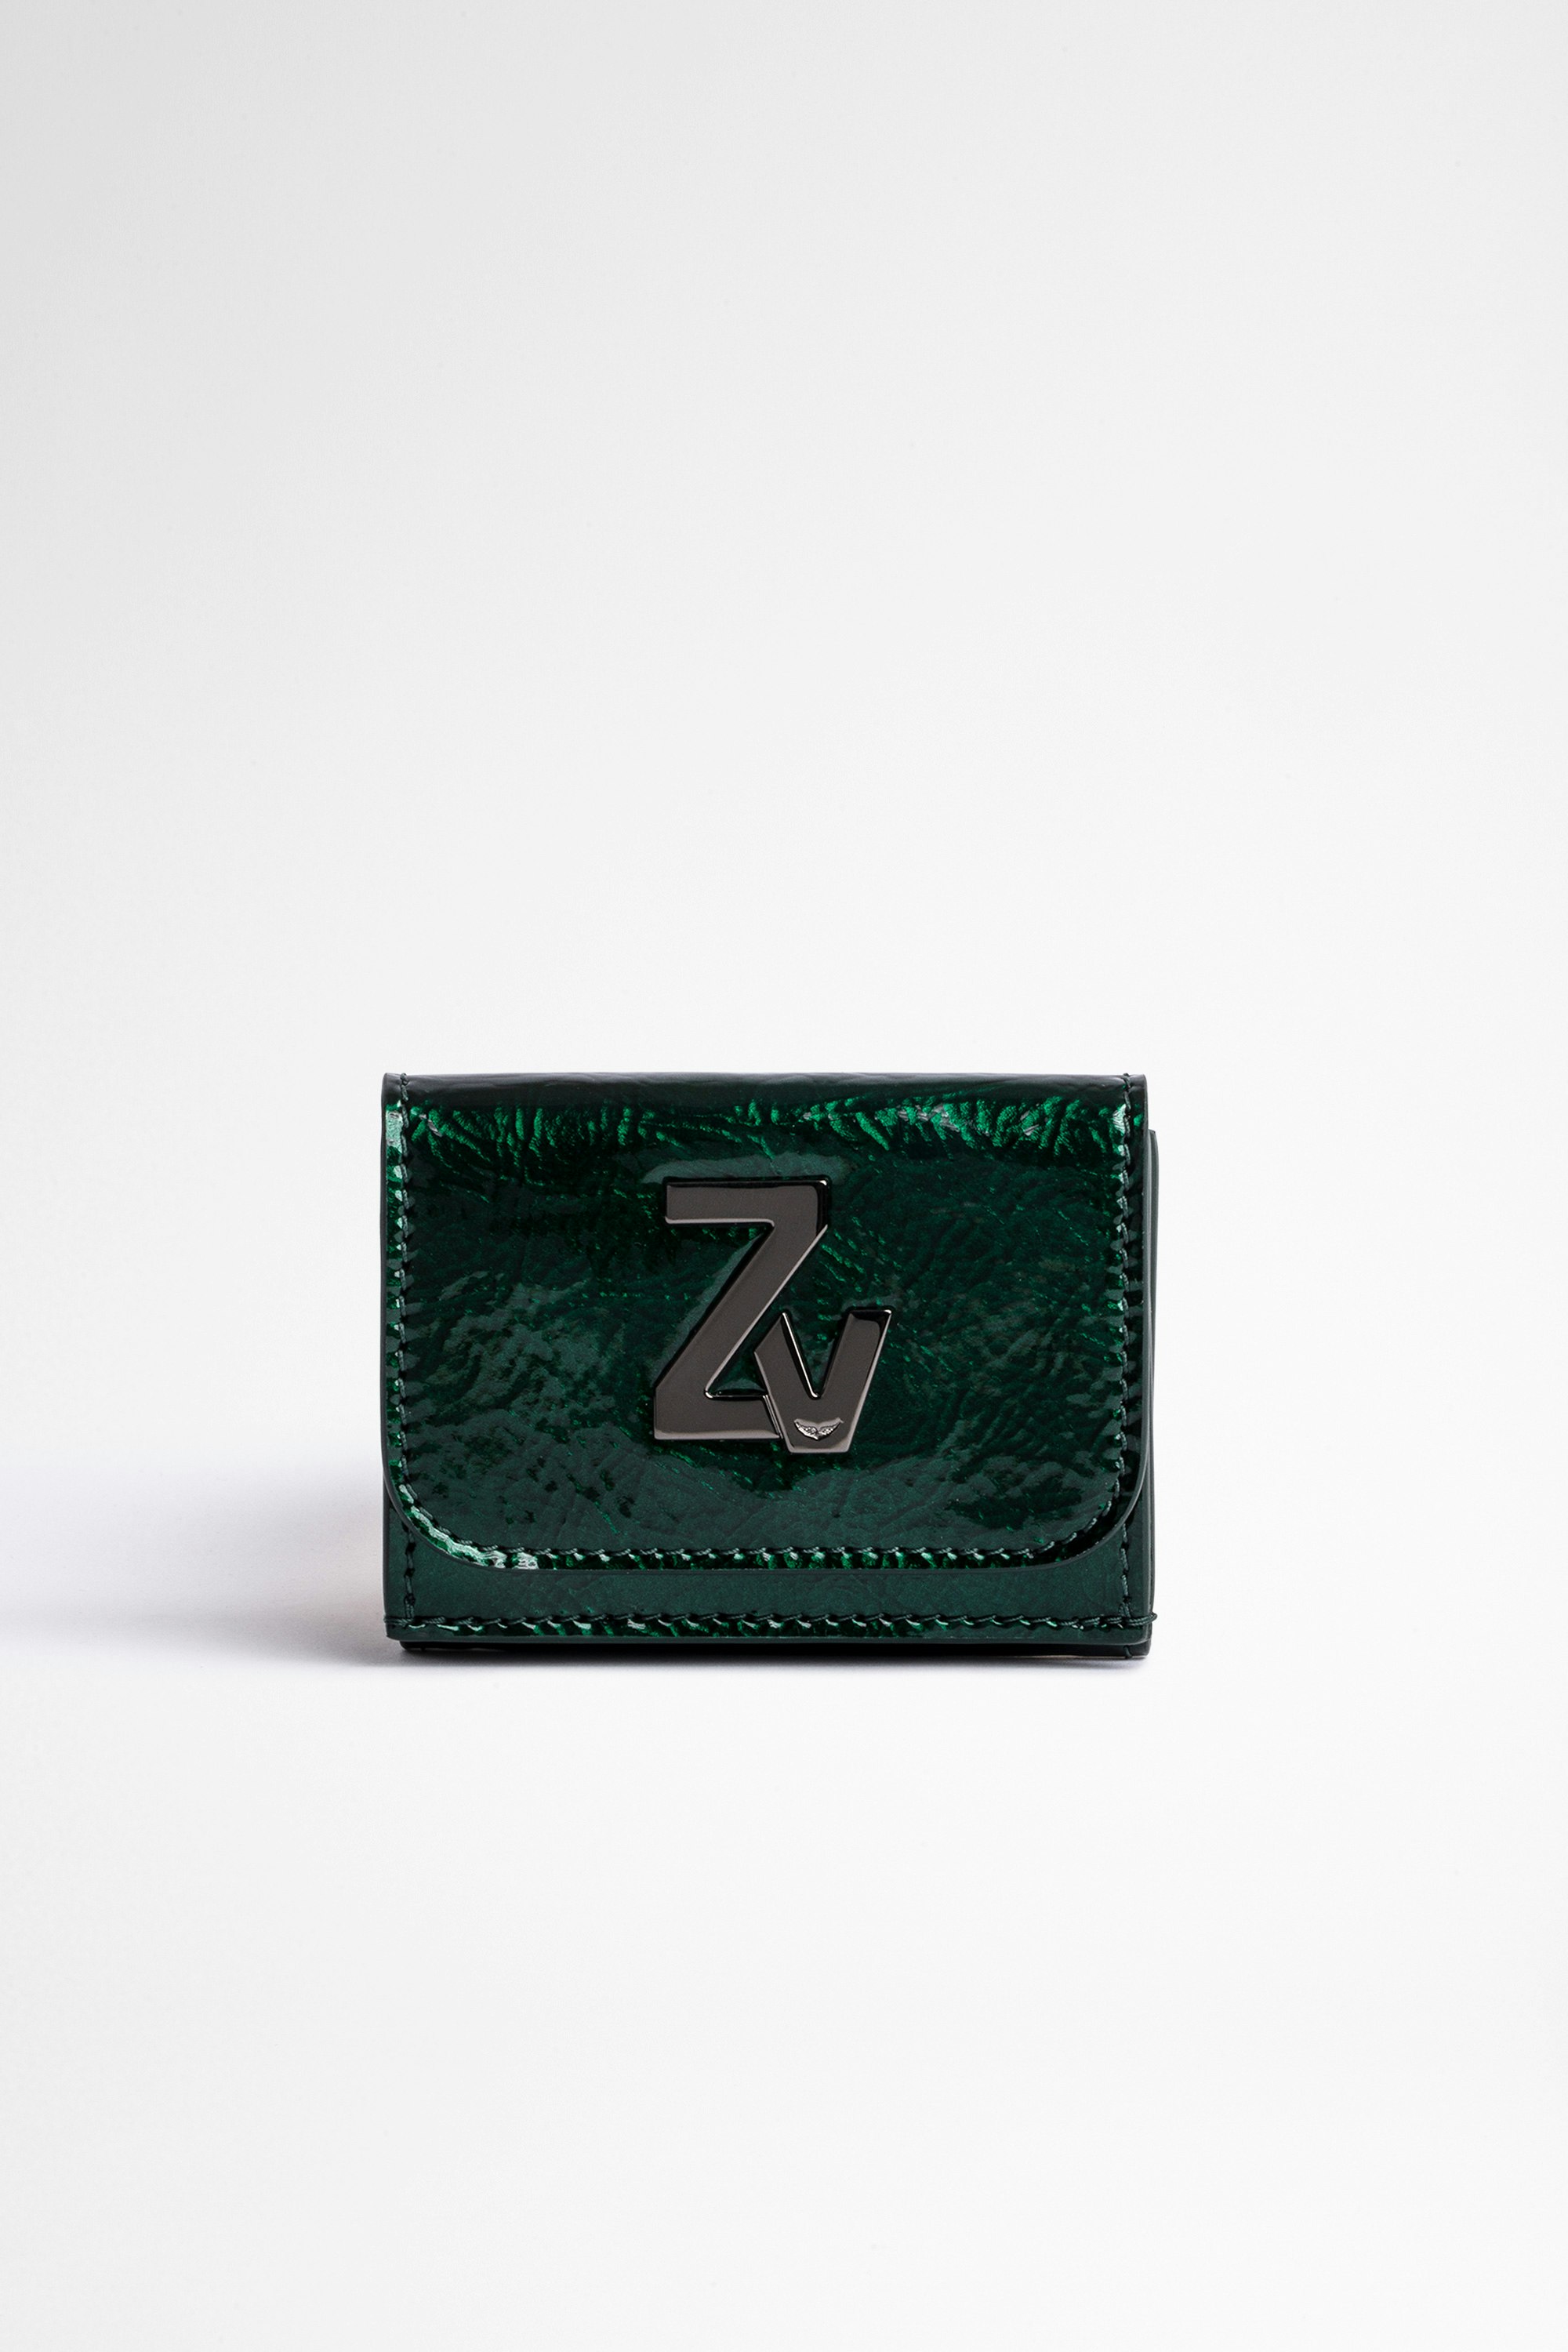 Portafoglio ZV Initiale Le Trifold Mini portafoglio pieghevole in pelle metallizzata verde donna